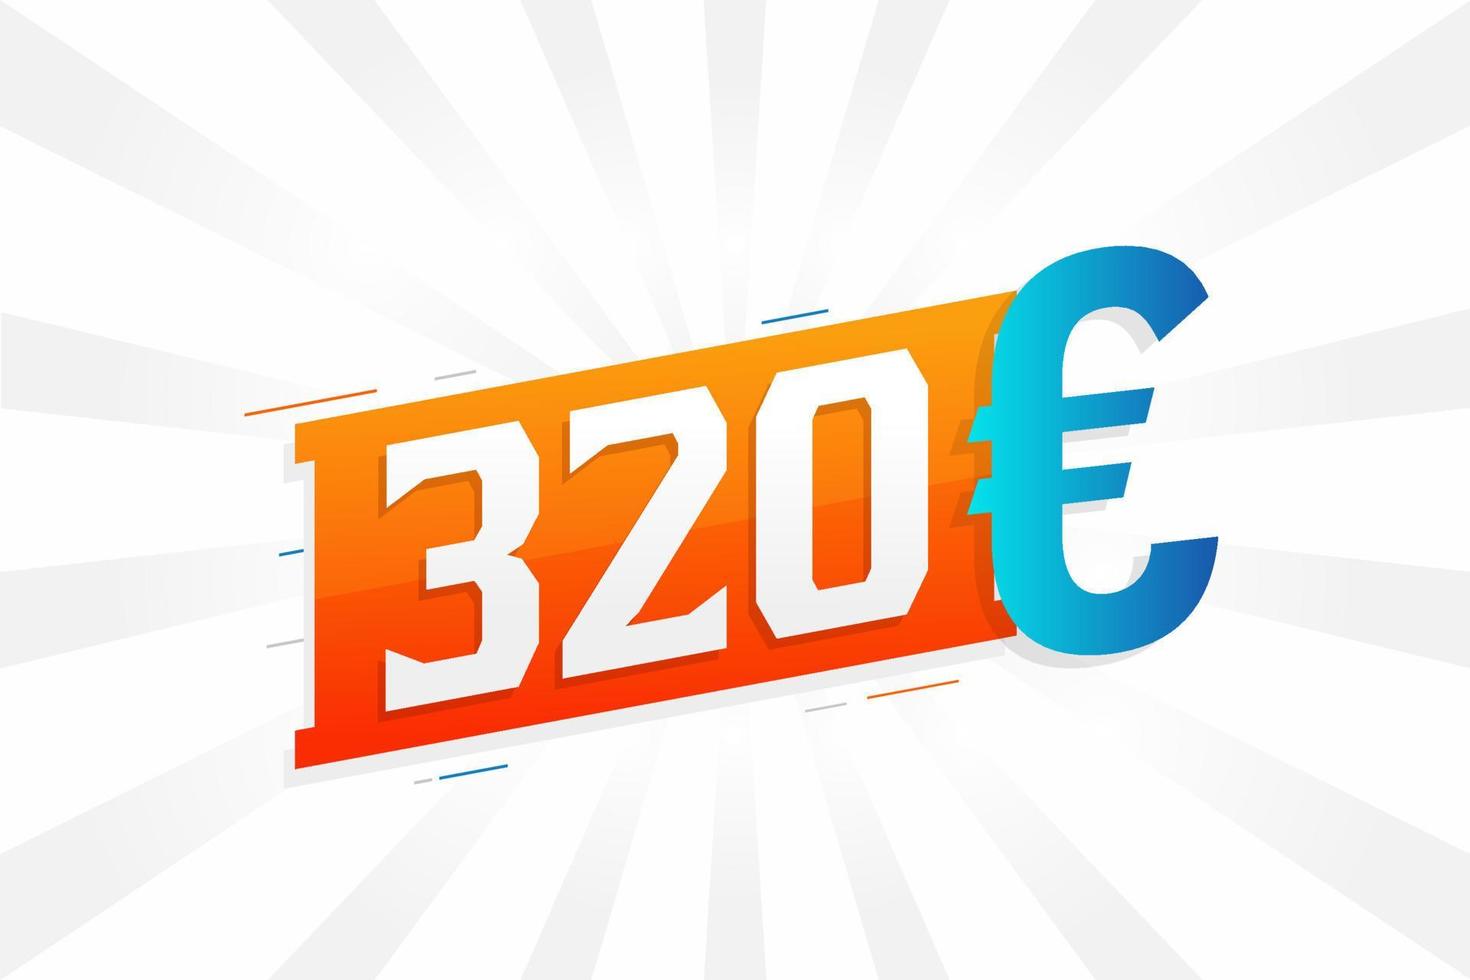 Símbolo de texto de vetor de moeda de 320 euros. vetor de estoque de dinheiro da união europeia de 320 euros